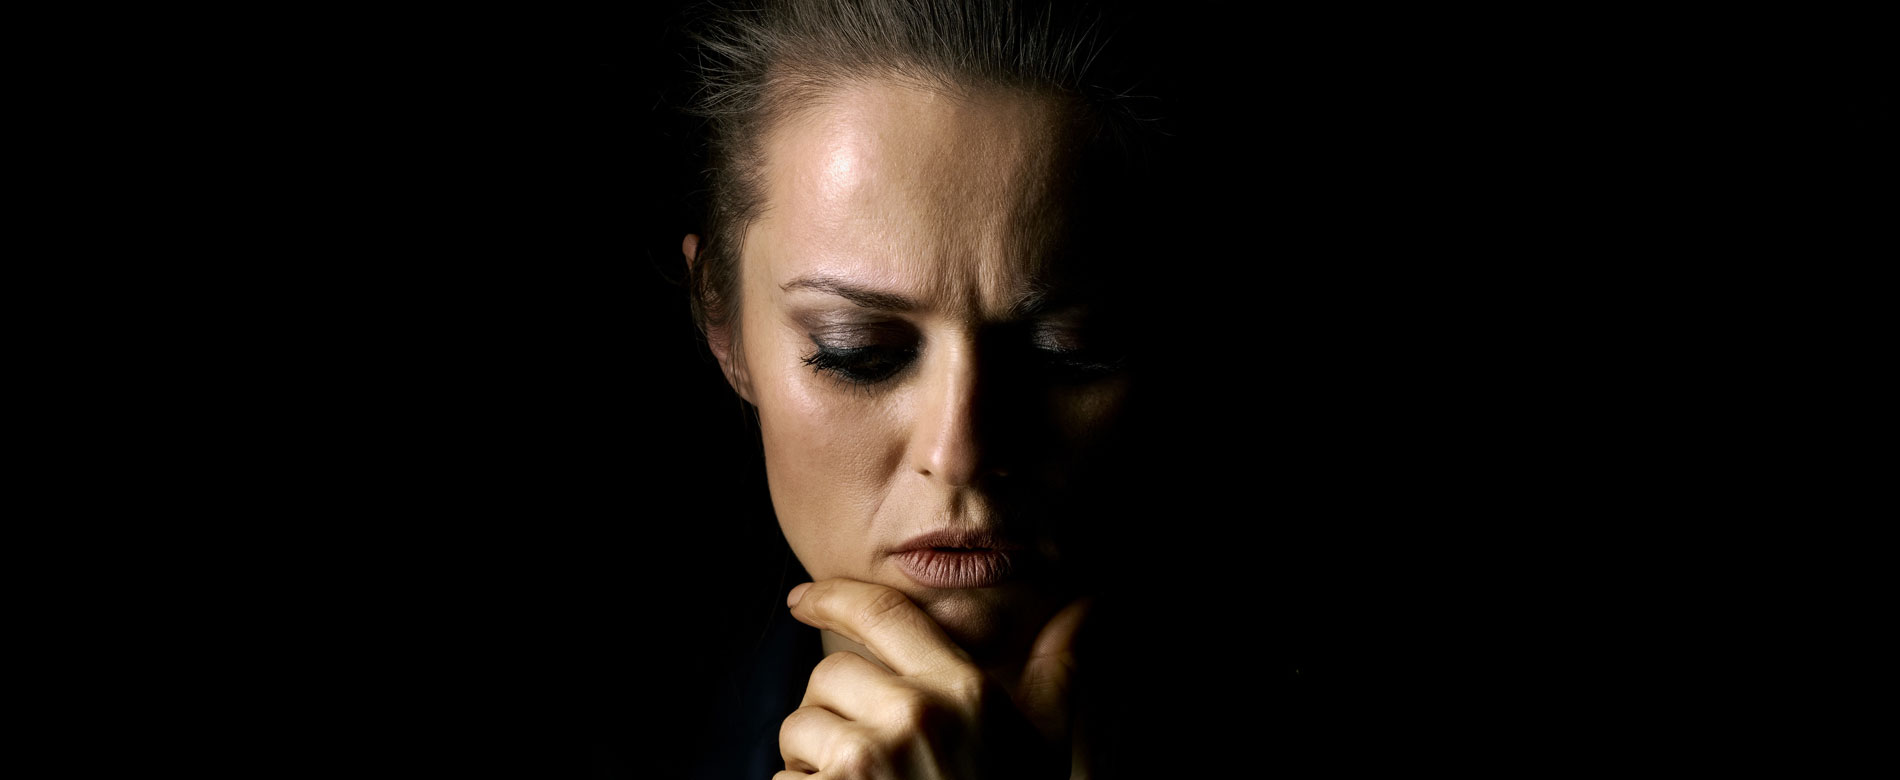 Resposta aos Internautas – “Como superar um abuso?”